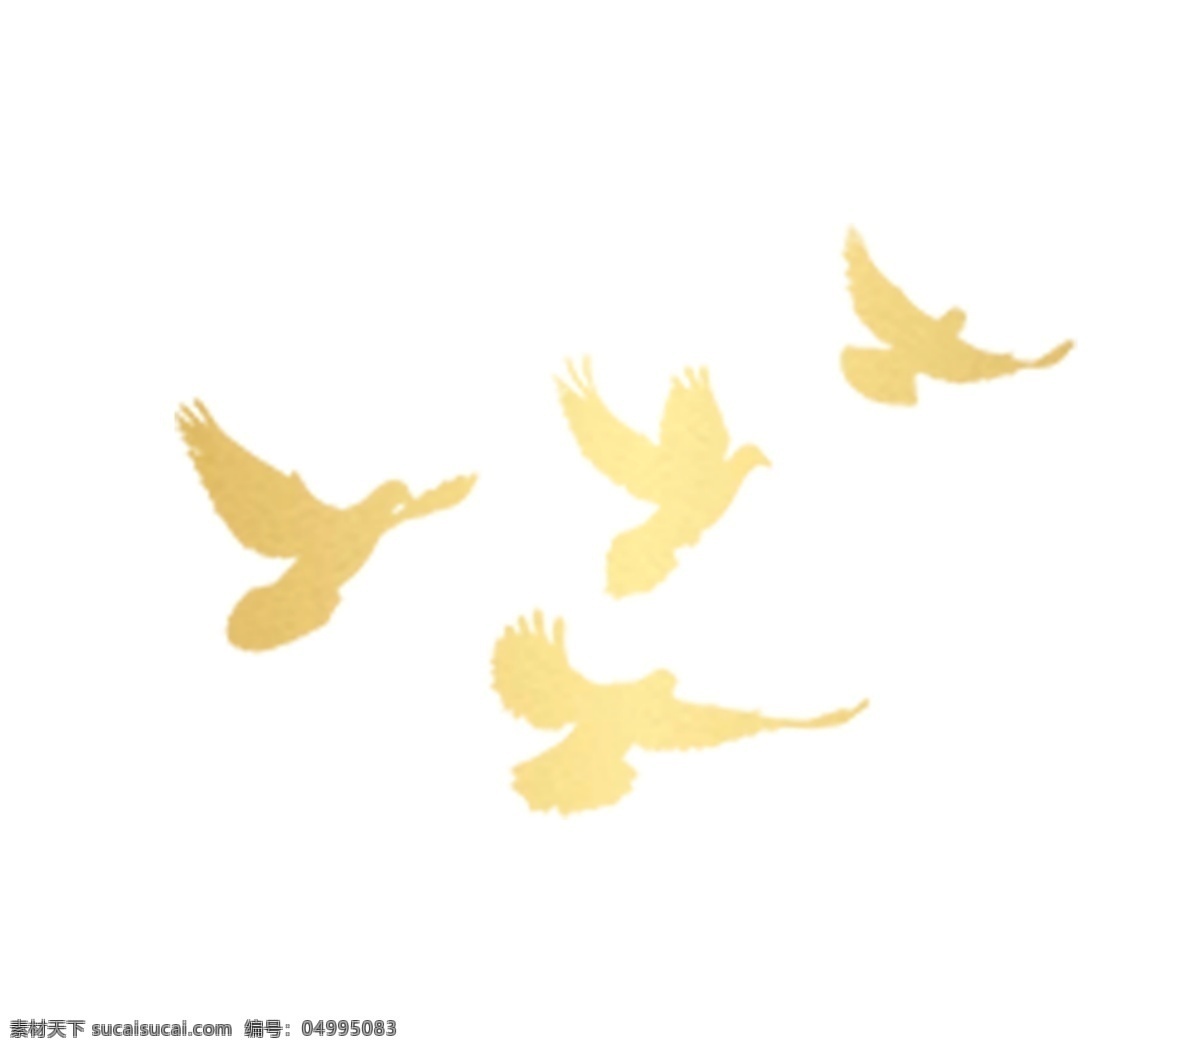 象征的和平鸽 四只 鸽子 和平 金黄色